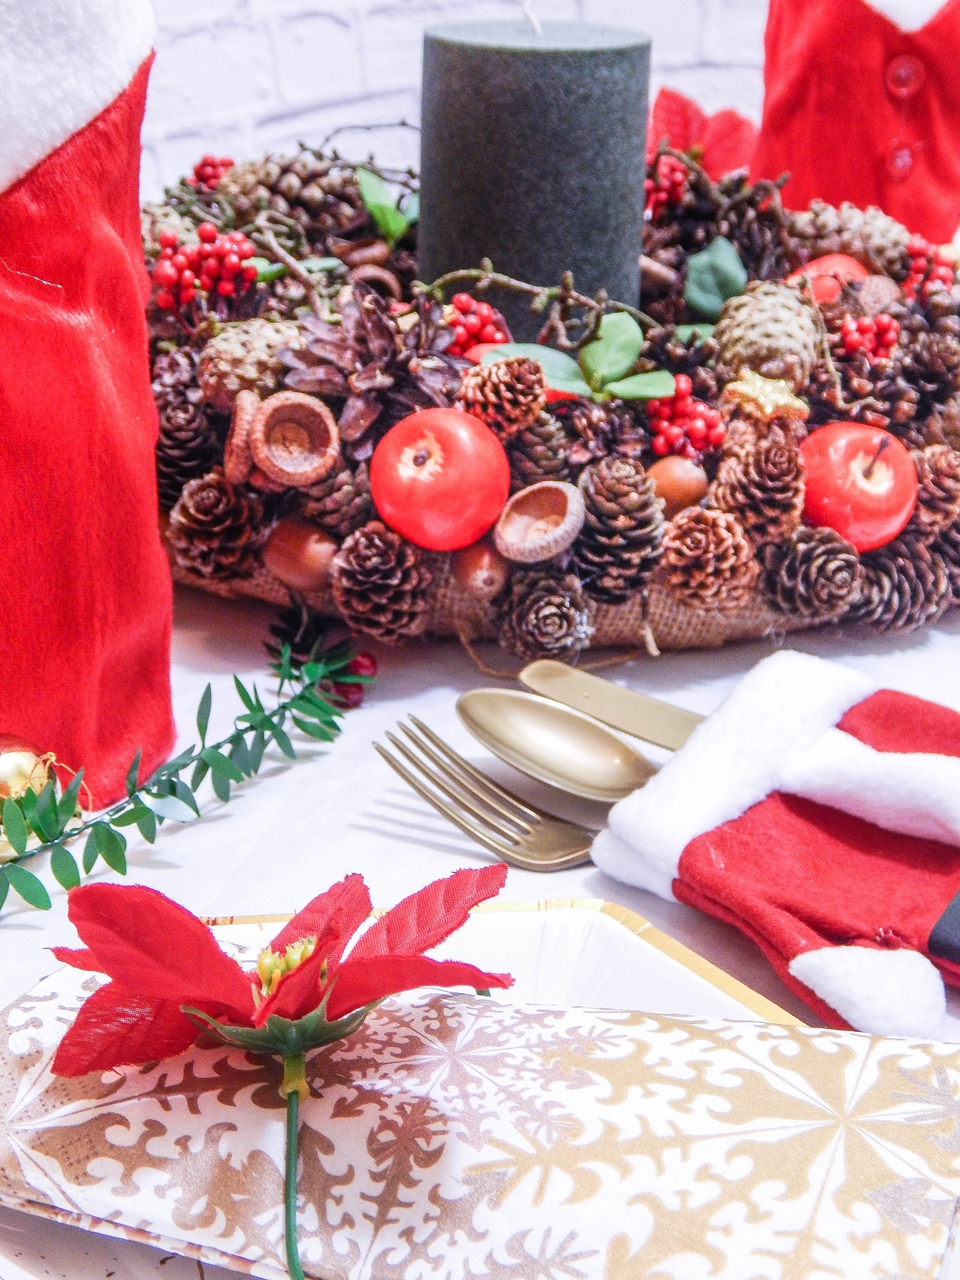 12 dekoracja świątecznego stołu jak udekorować stół na boże narodzenie dekoracja kolacja wigilijna dekoracja stroik na stół wigilijny wianek świeczka mikołajowe ubrania na butelki mikołaje na sztućce